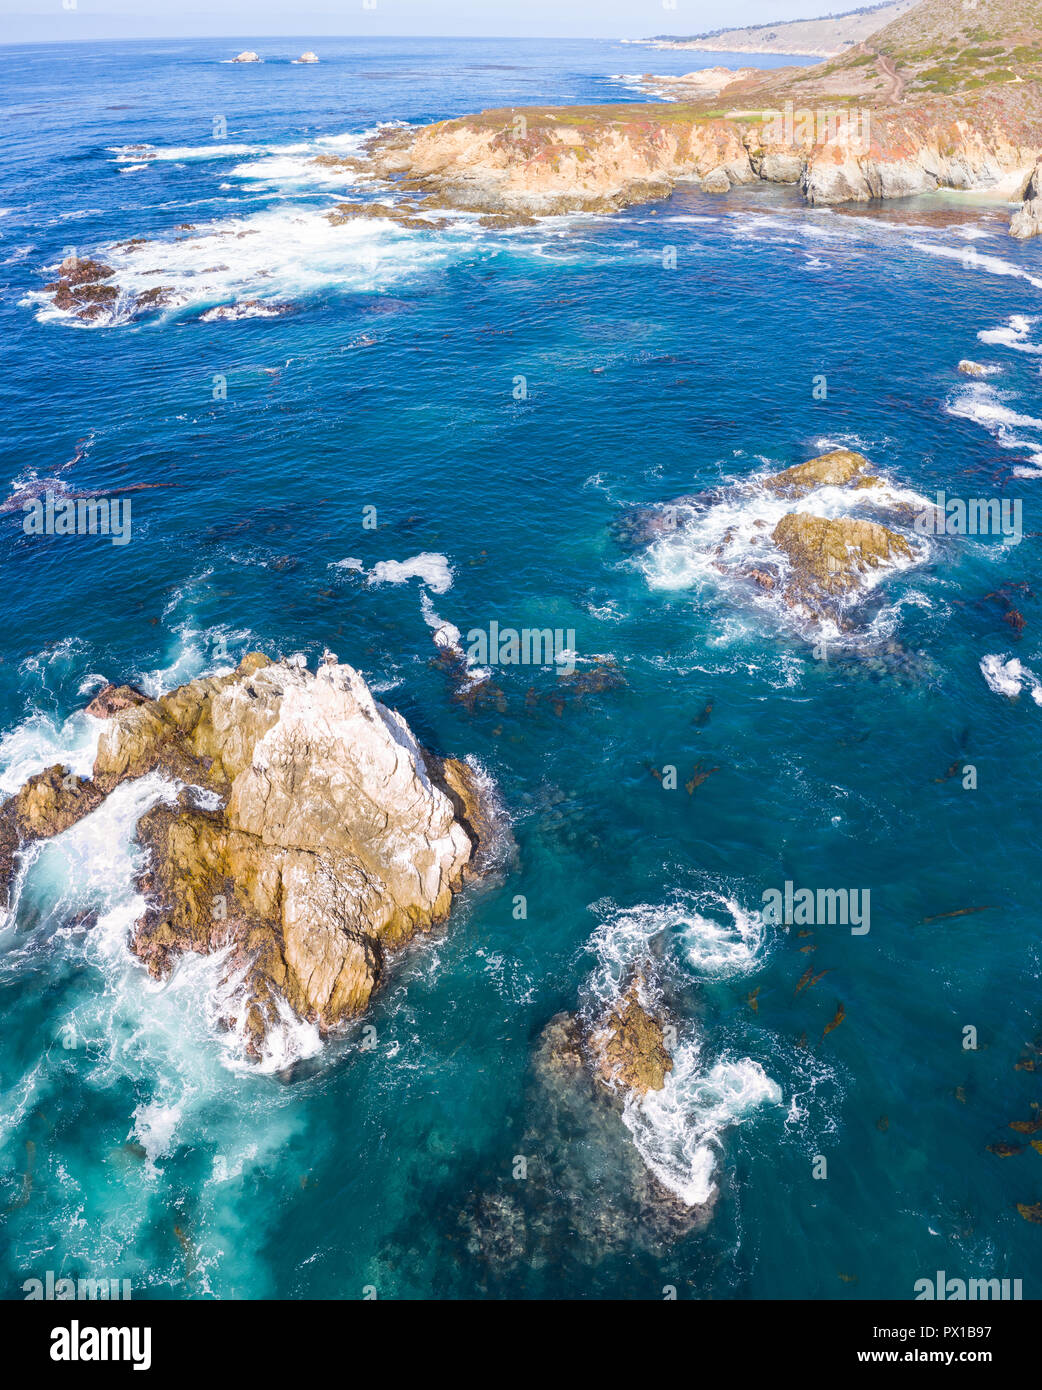 Die kalte, nährstoffreiche Wasser des Pazifischen Ozeans Swirl gegen den felsigen und szenischen Küstenlinie von Nordkalifornien, nicht weit von Monterey. Stockfoto